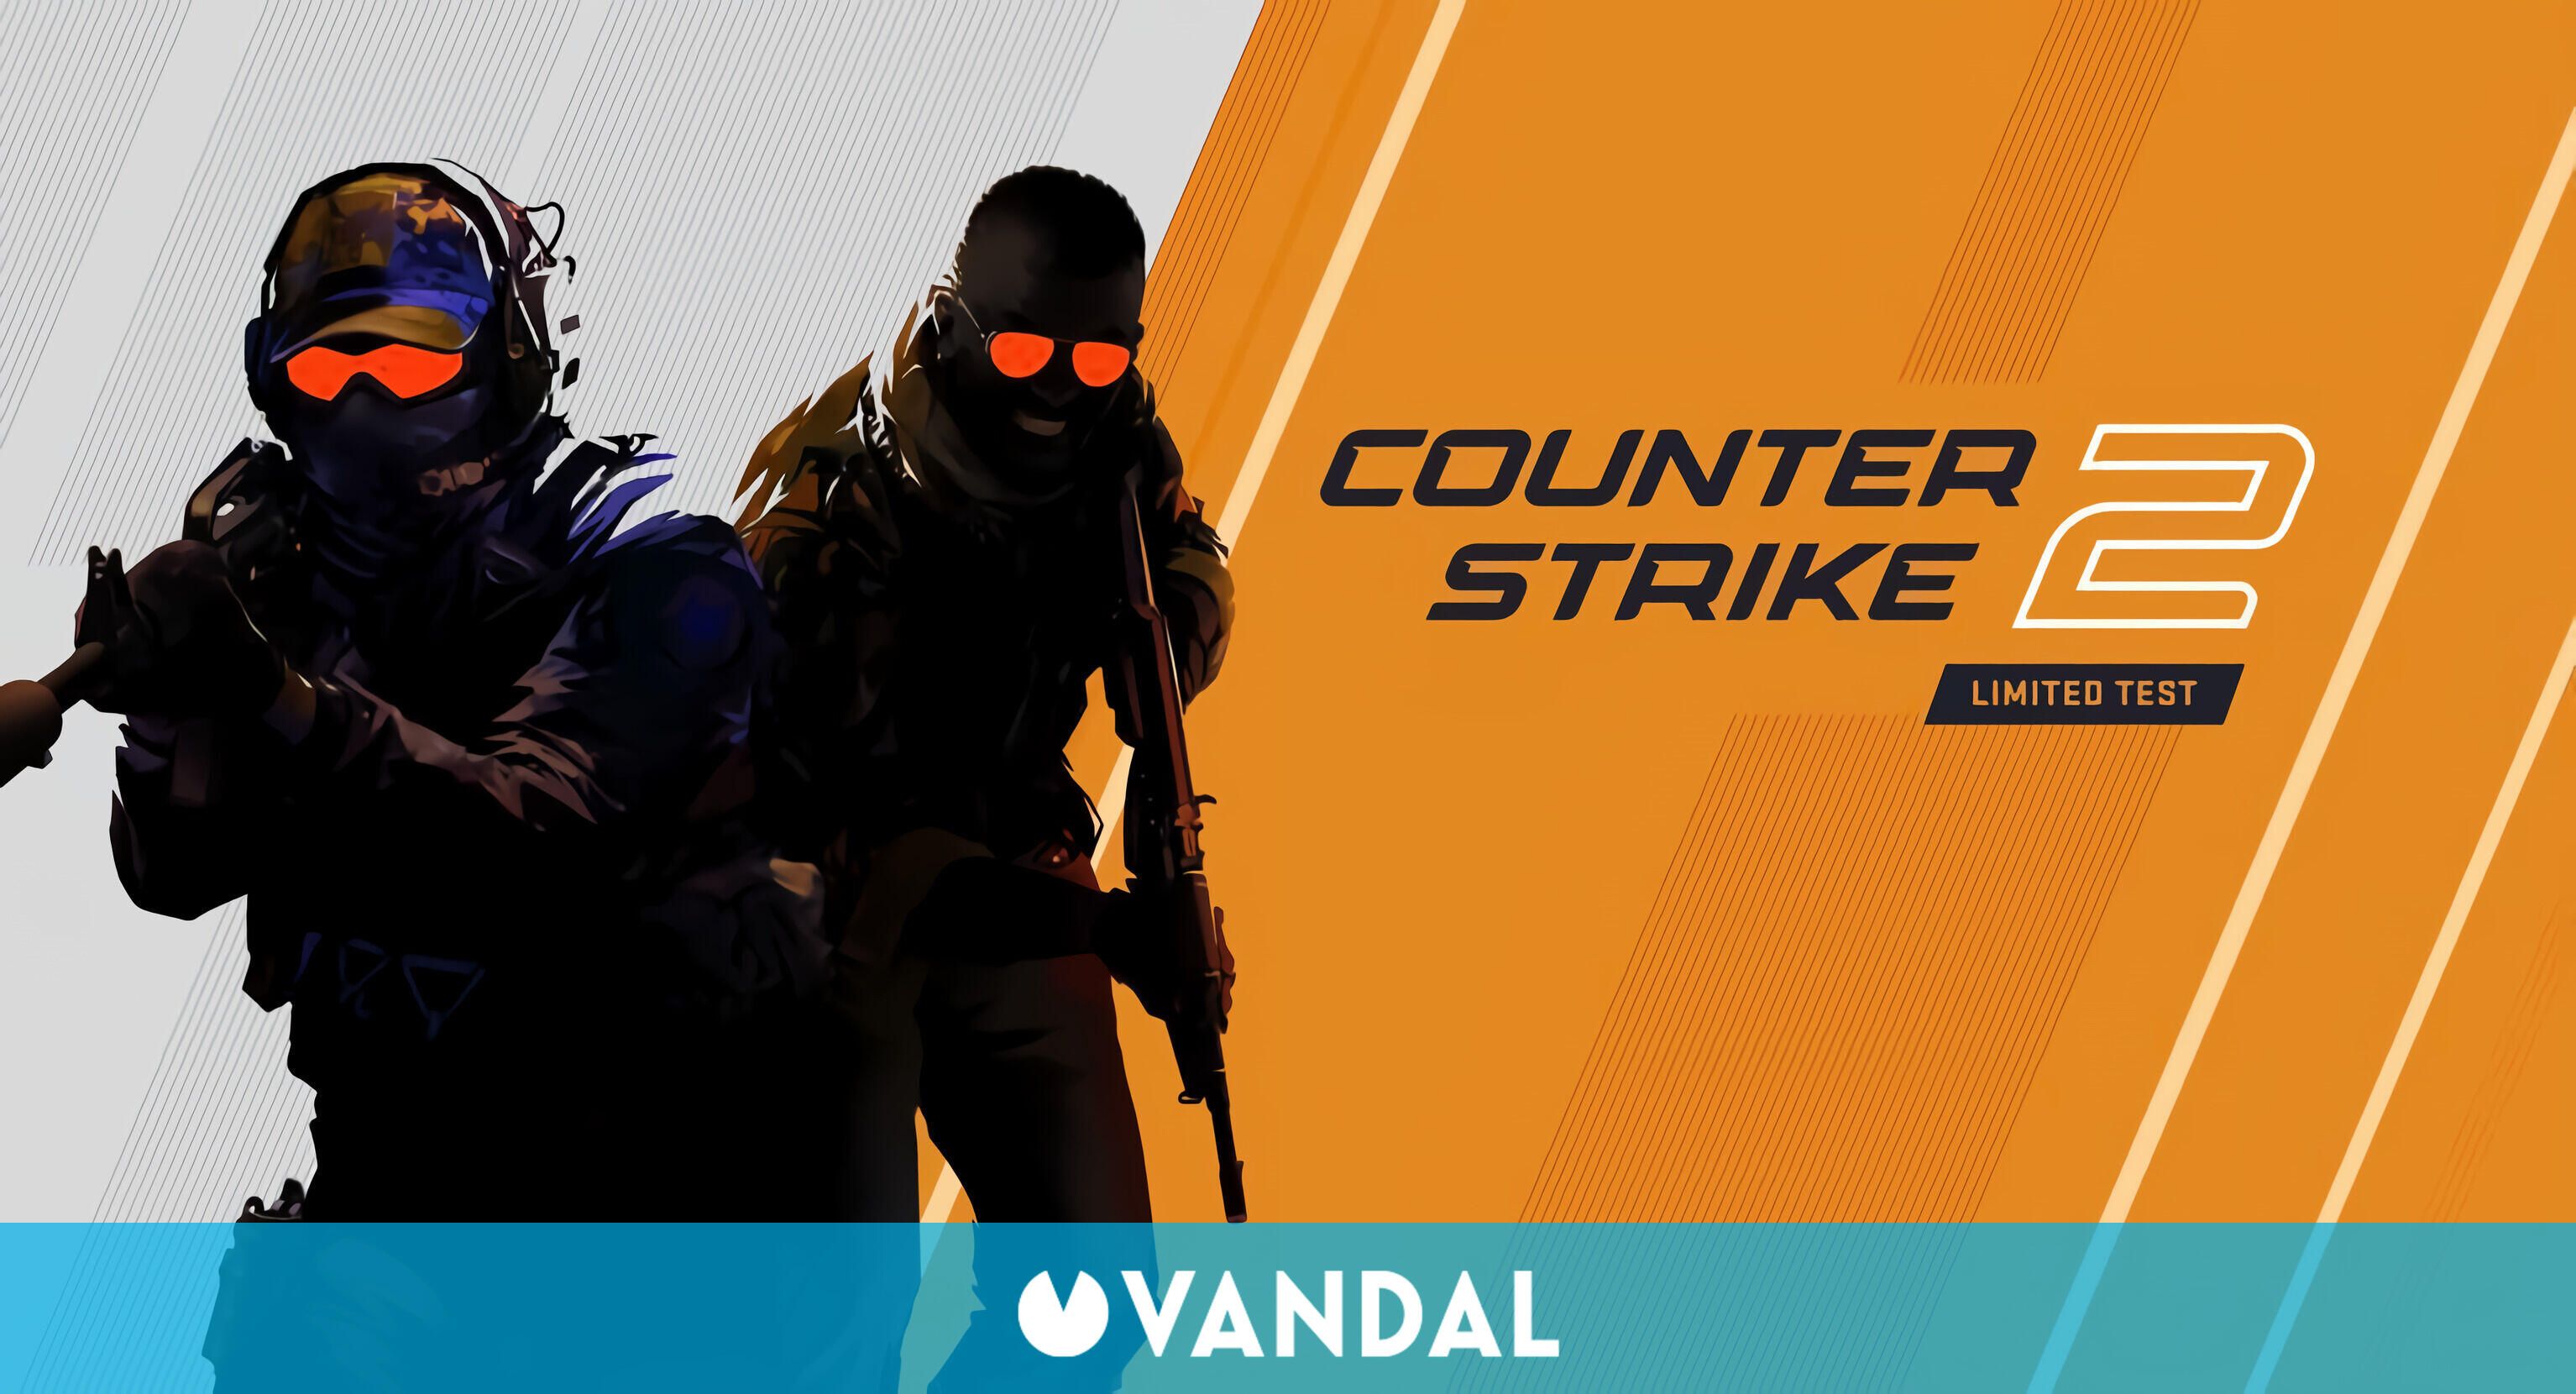 Counter-Strike 2 può annullare i giochi se rileva un imbroglione